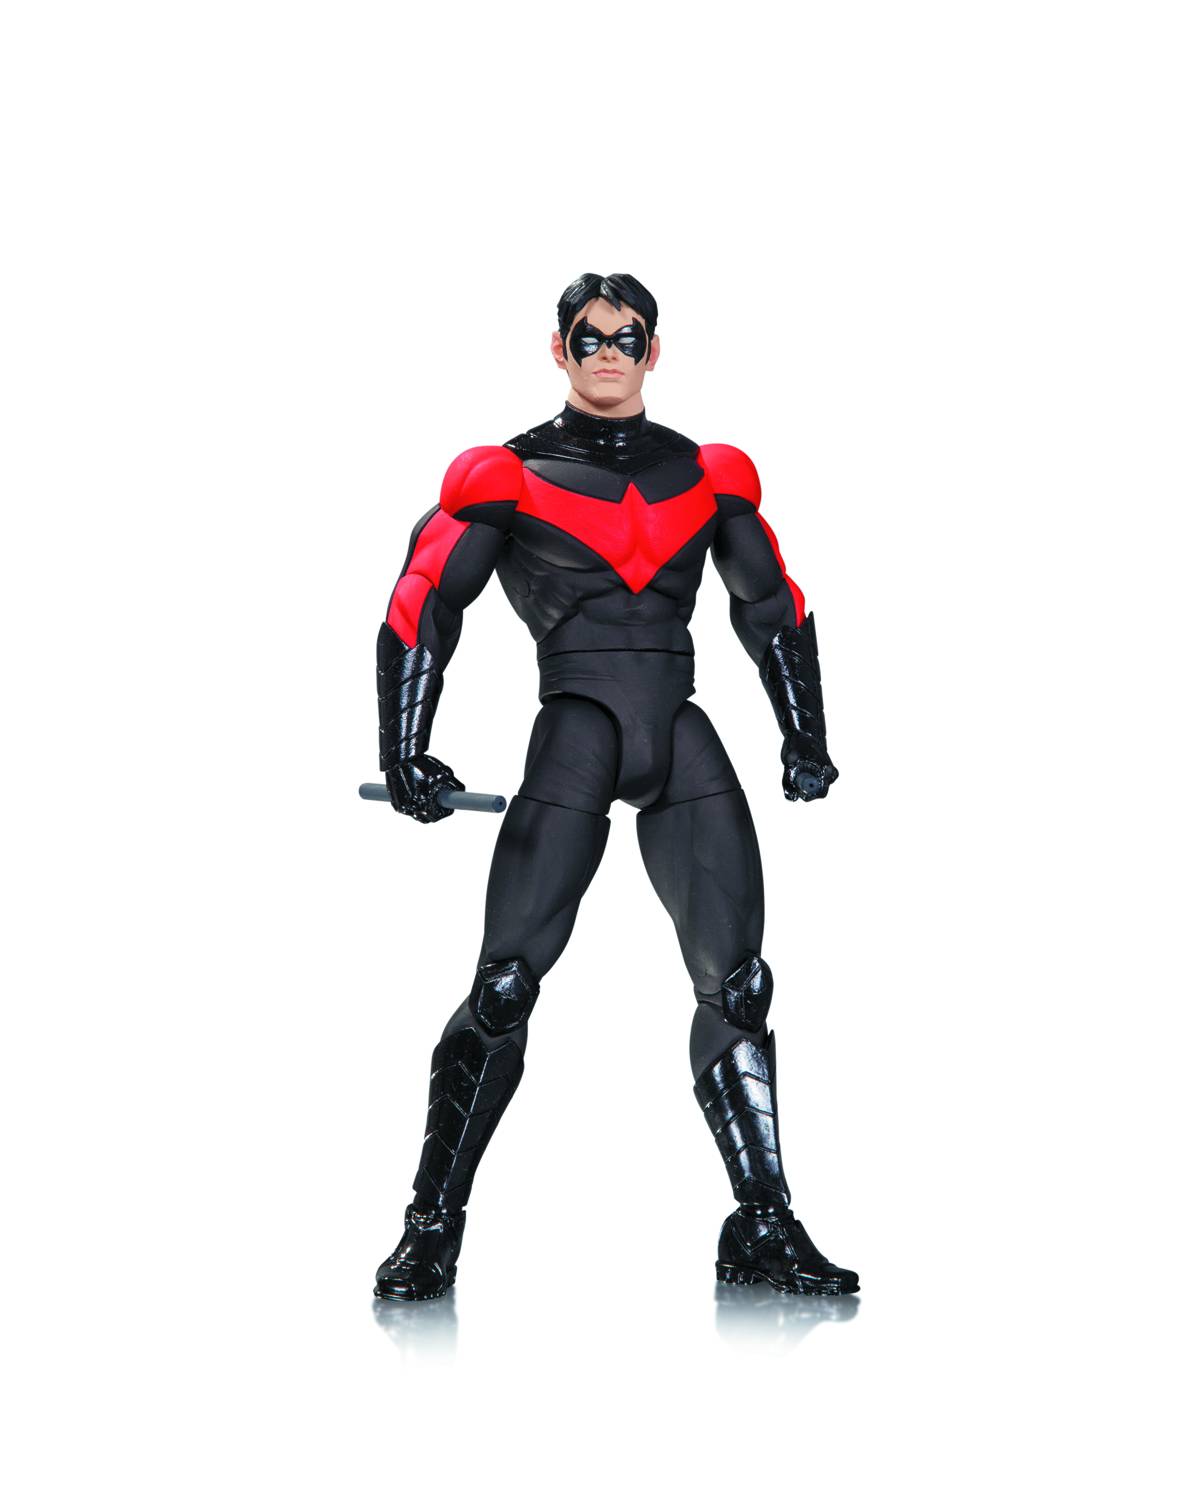 DC Comics Designer Series 1 Capullo Nightwing Action Figure